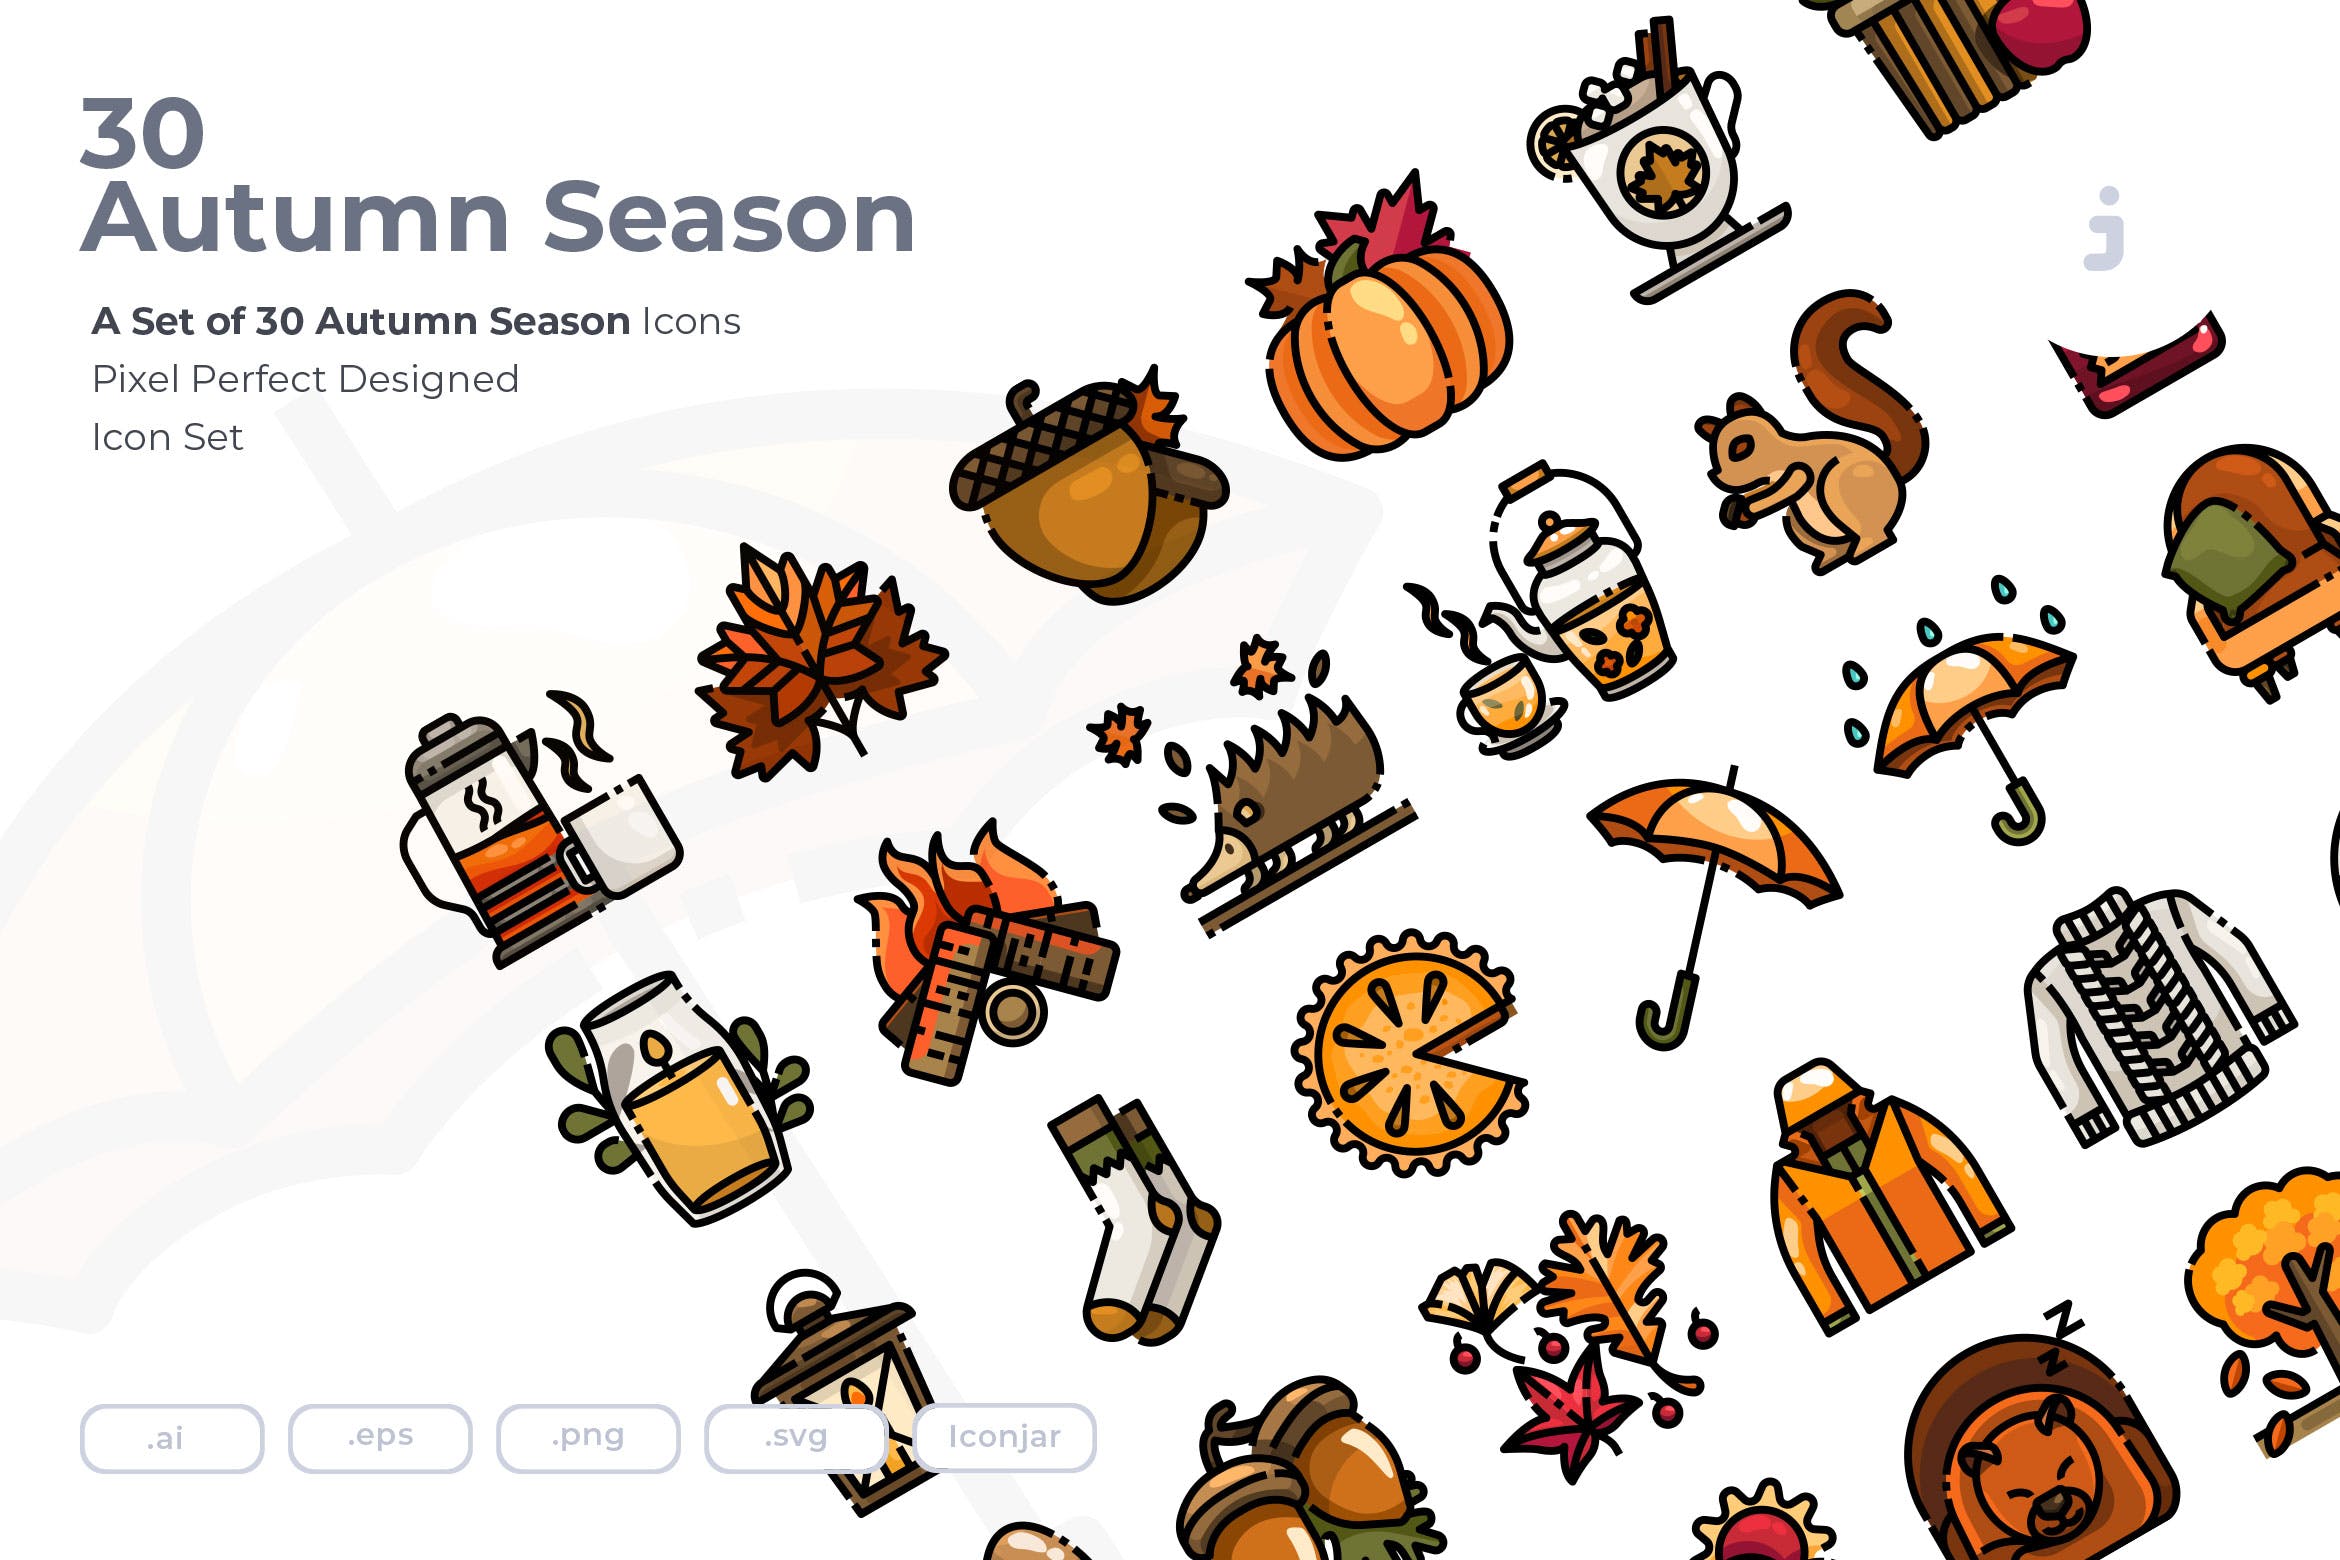 秋季主题元素矢量图标素材 30 Autumn Season